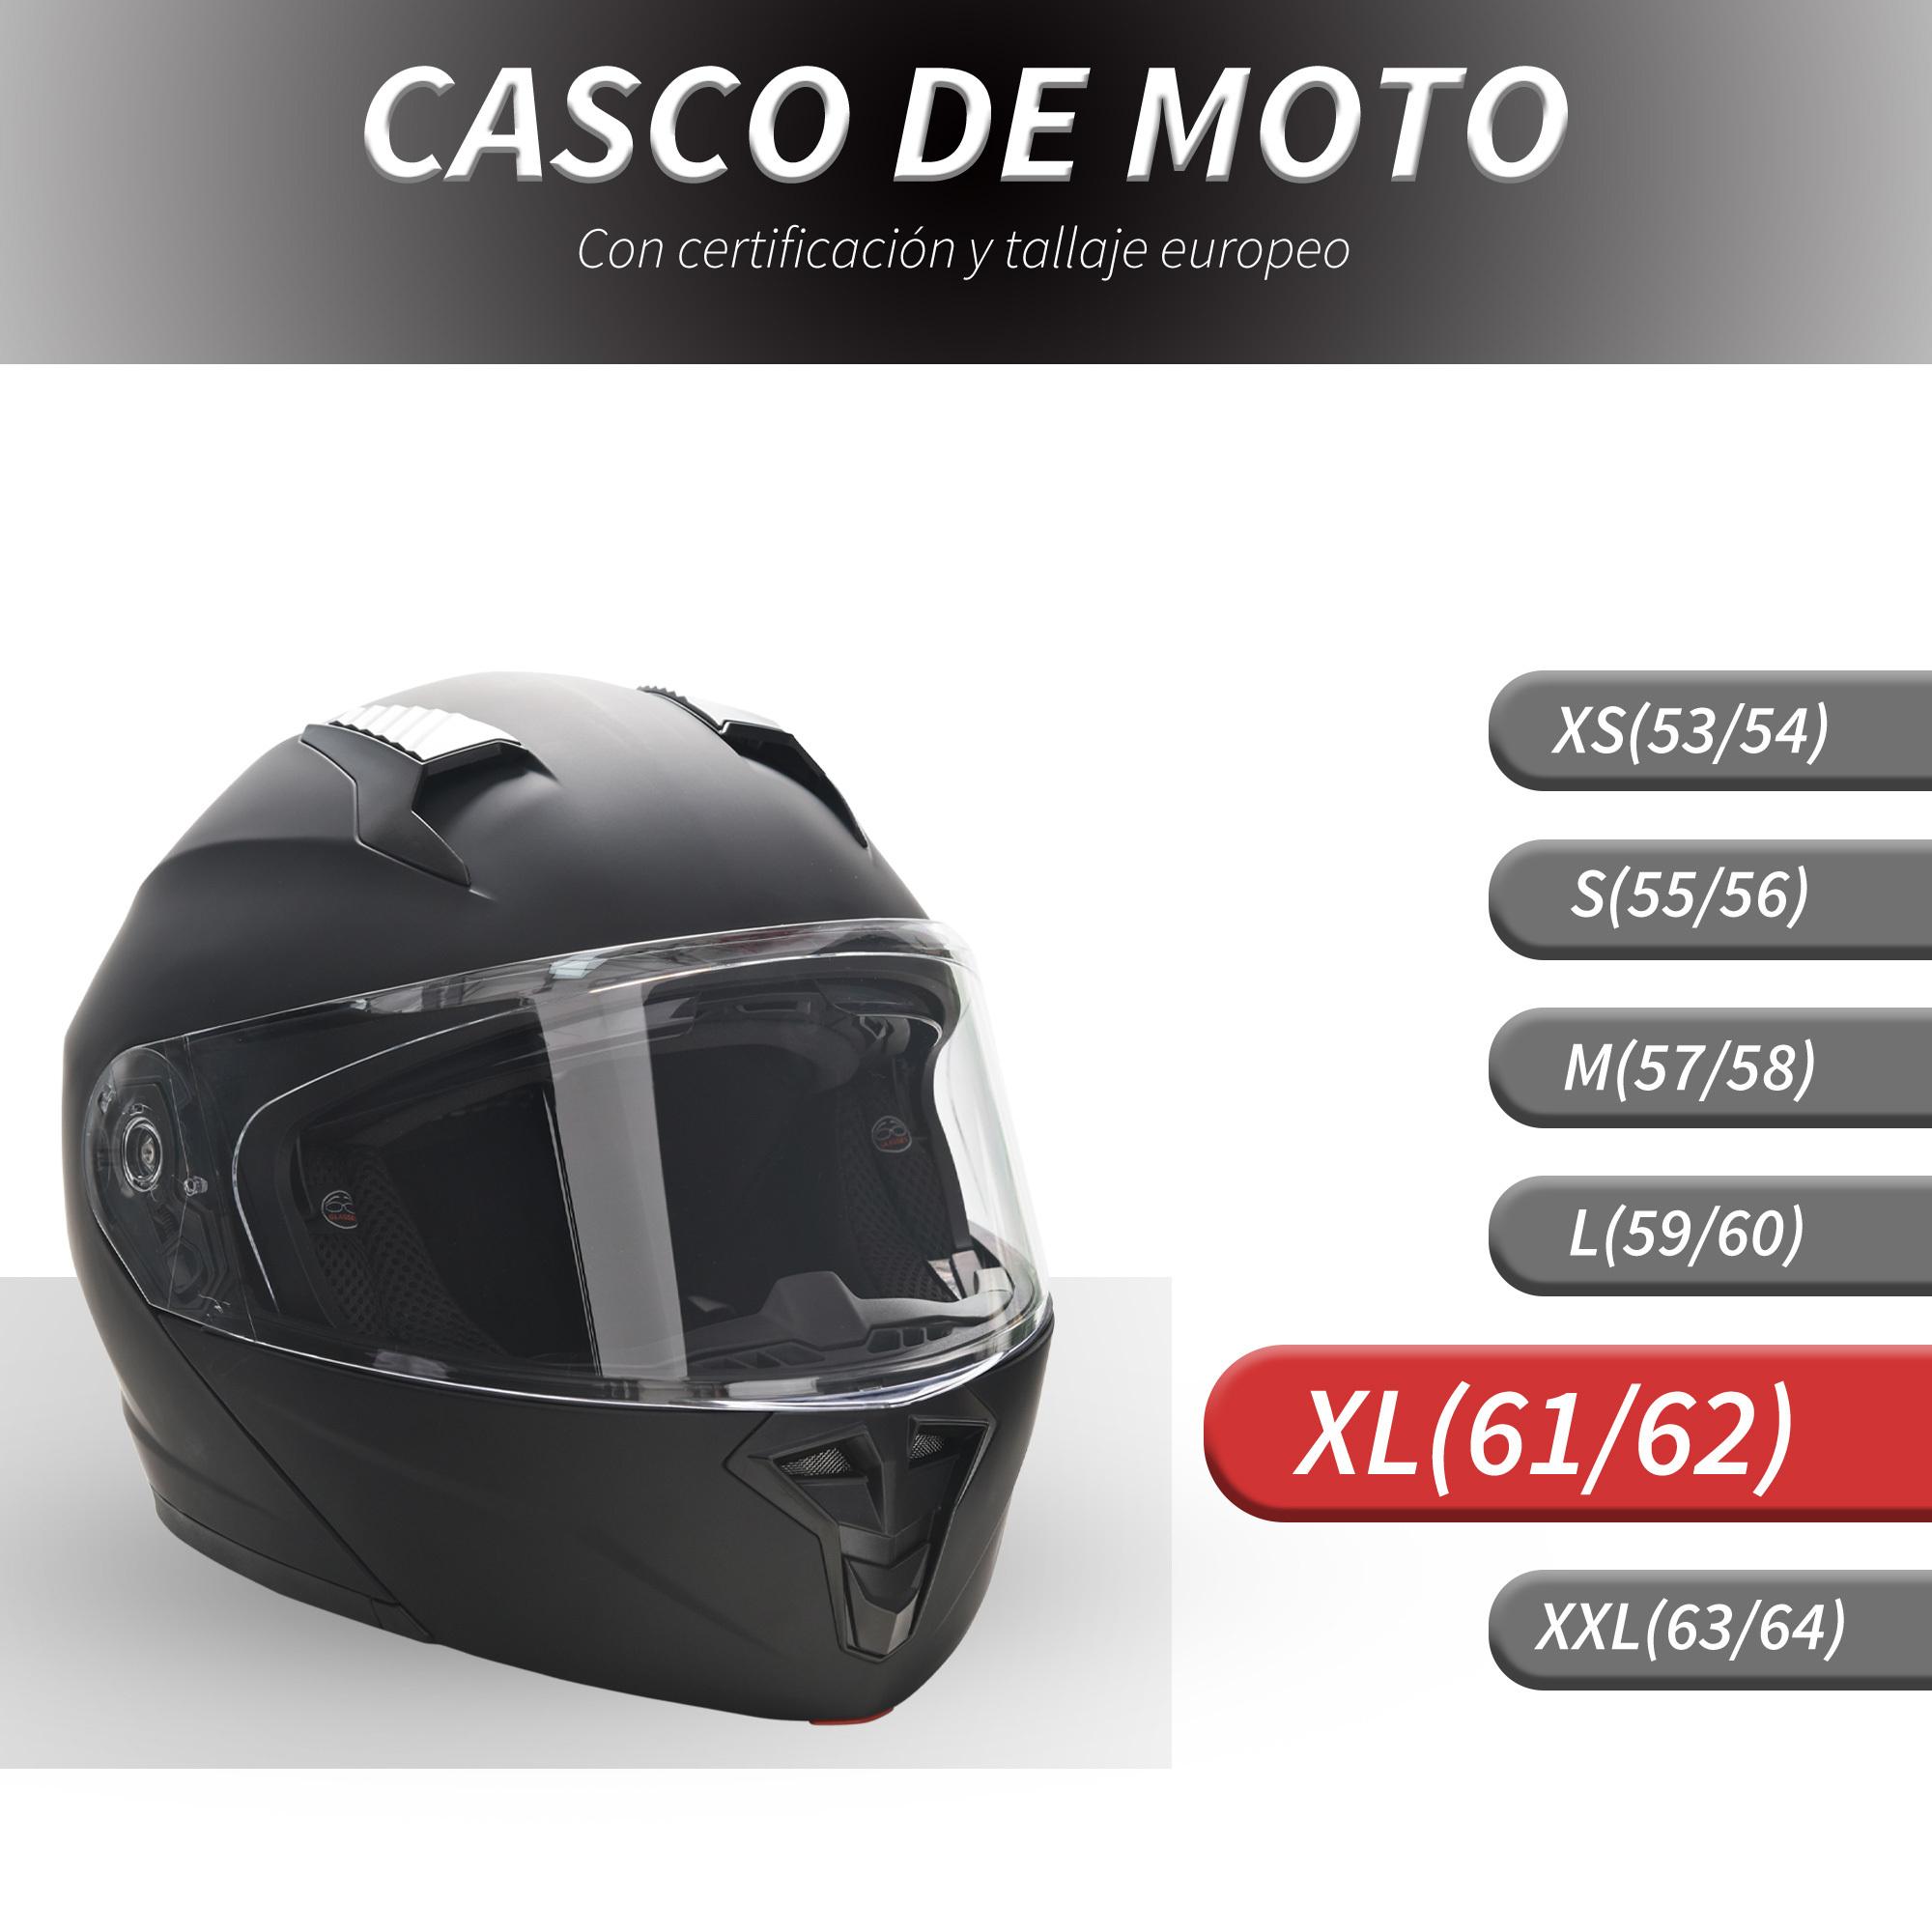 Casco de Moto Doble Visera Cabezal Anticolisión Certificación Europea XL-60 cm